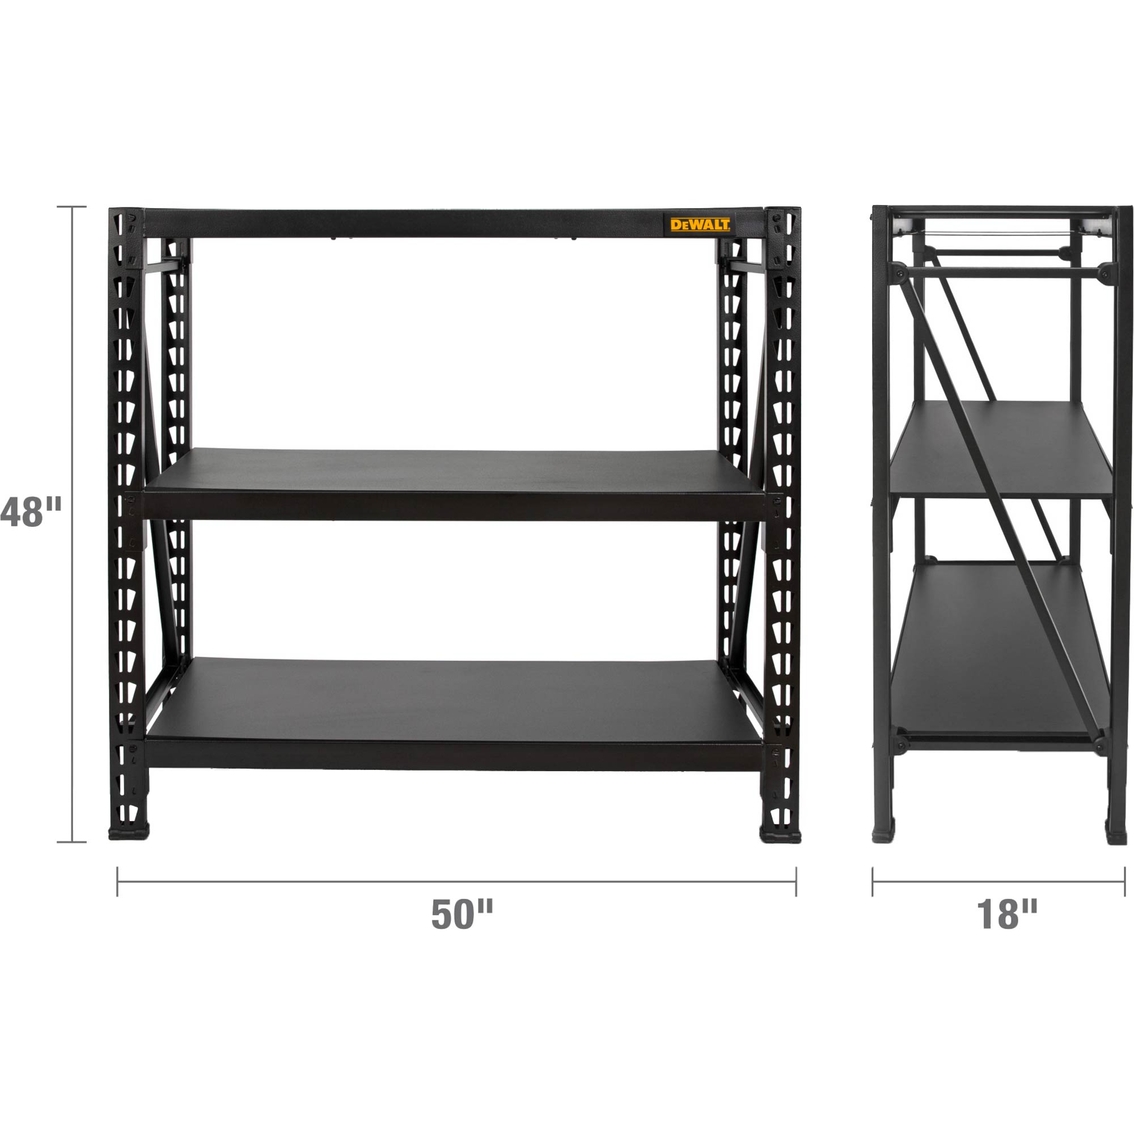 DeWalt 4 ft. Tall, Black Frame 3 Shelf Industrial Storage Rack - Image 7 of 7